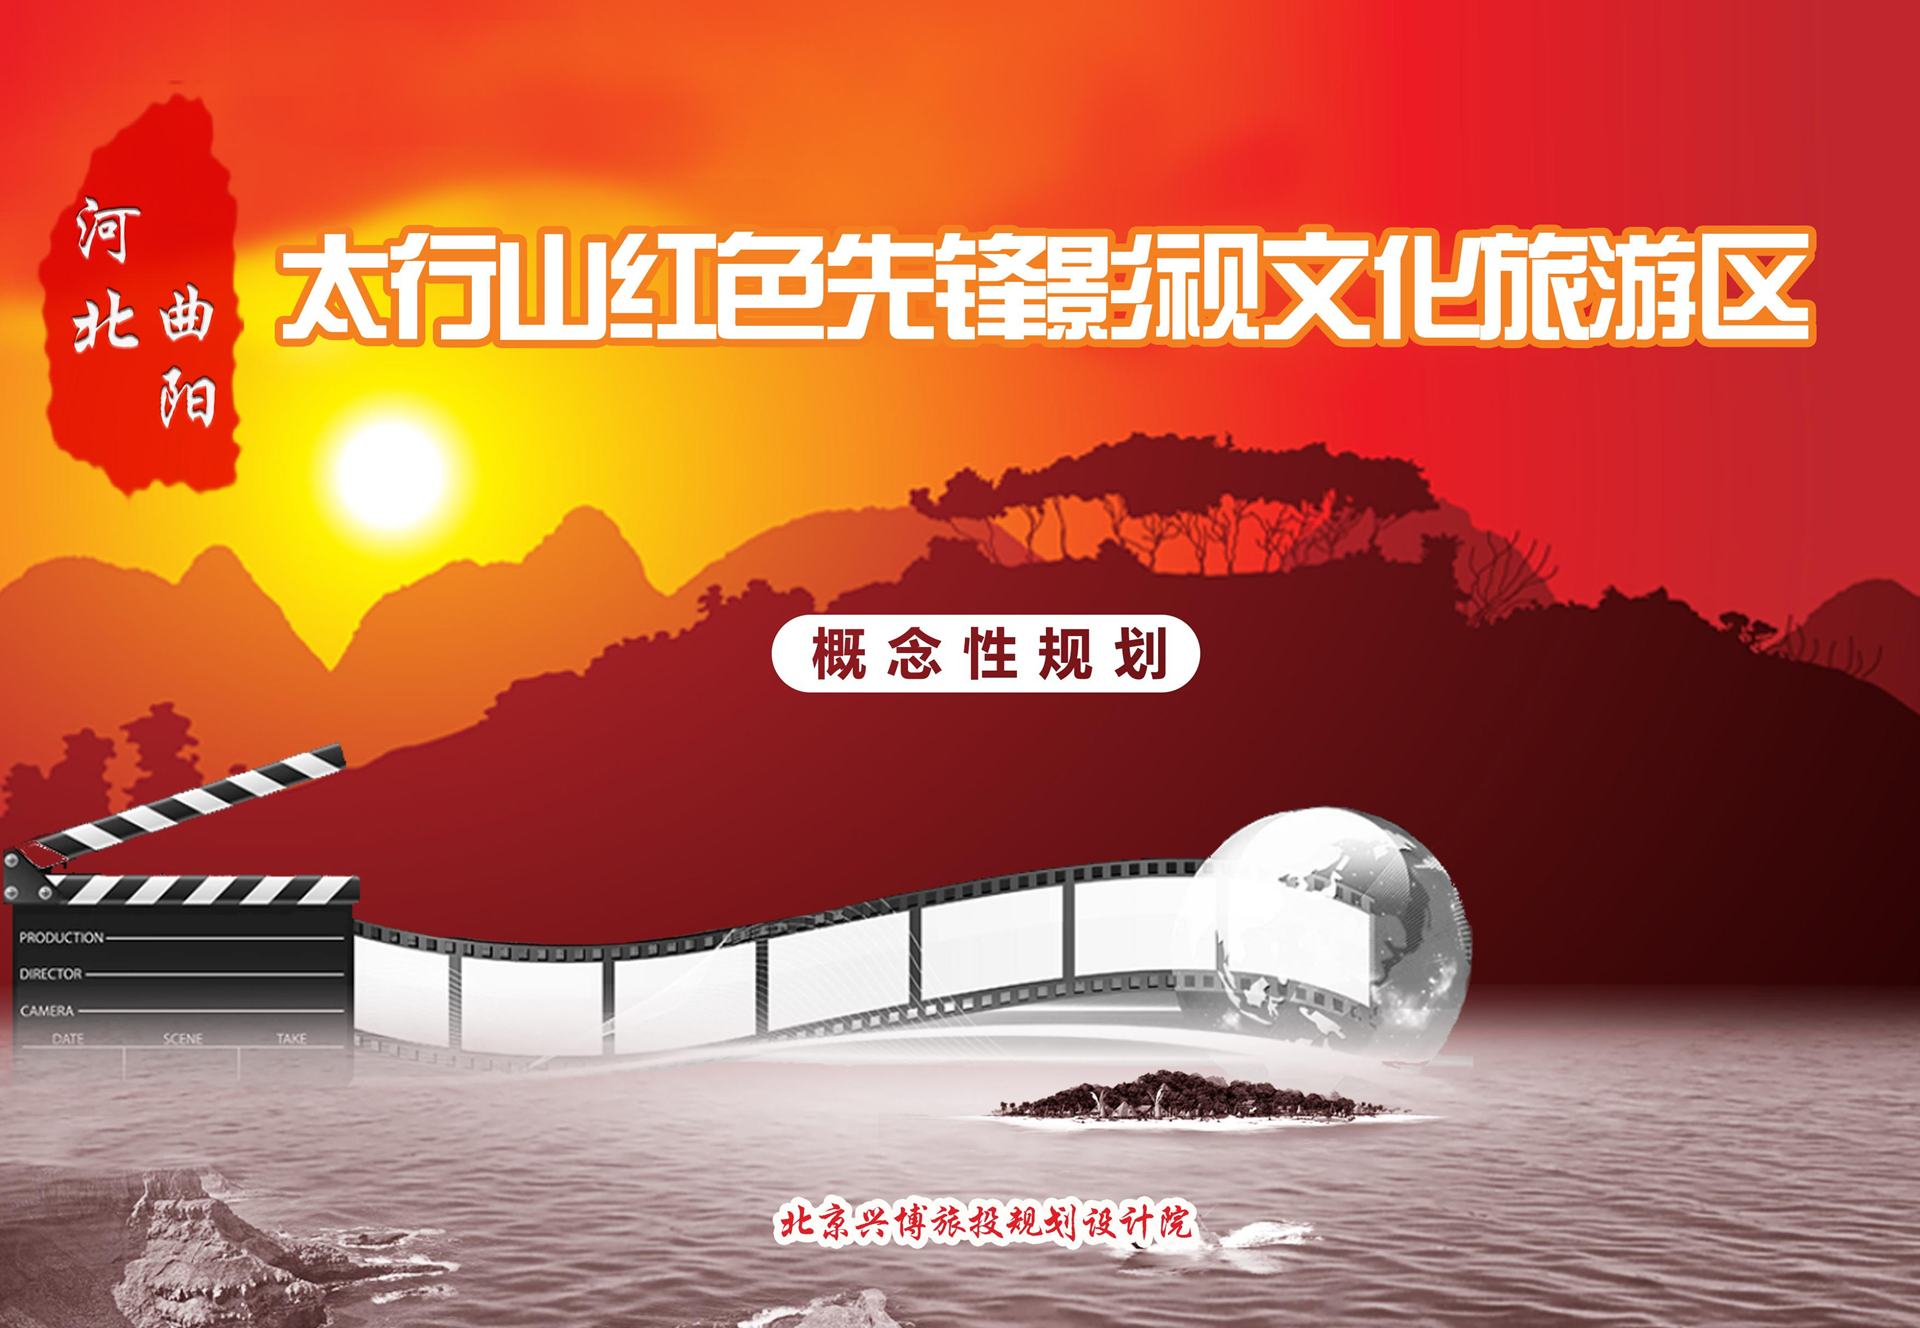 北京兴博旅投规划设计院承接《河北曲阳太行山红色先锋影视文化旅游区概念性规划》(图1)